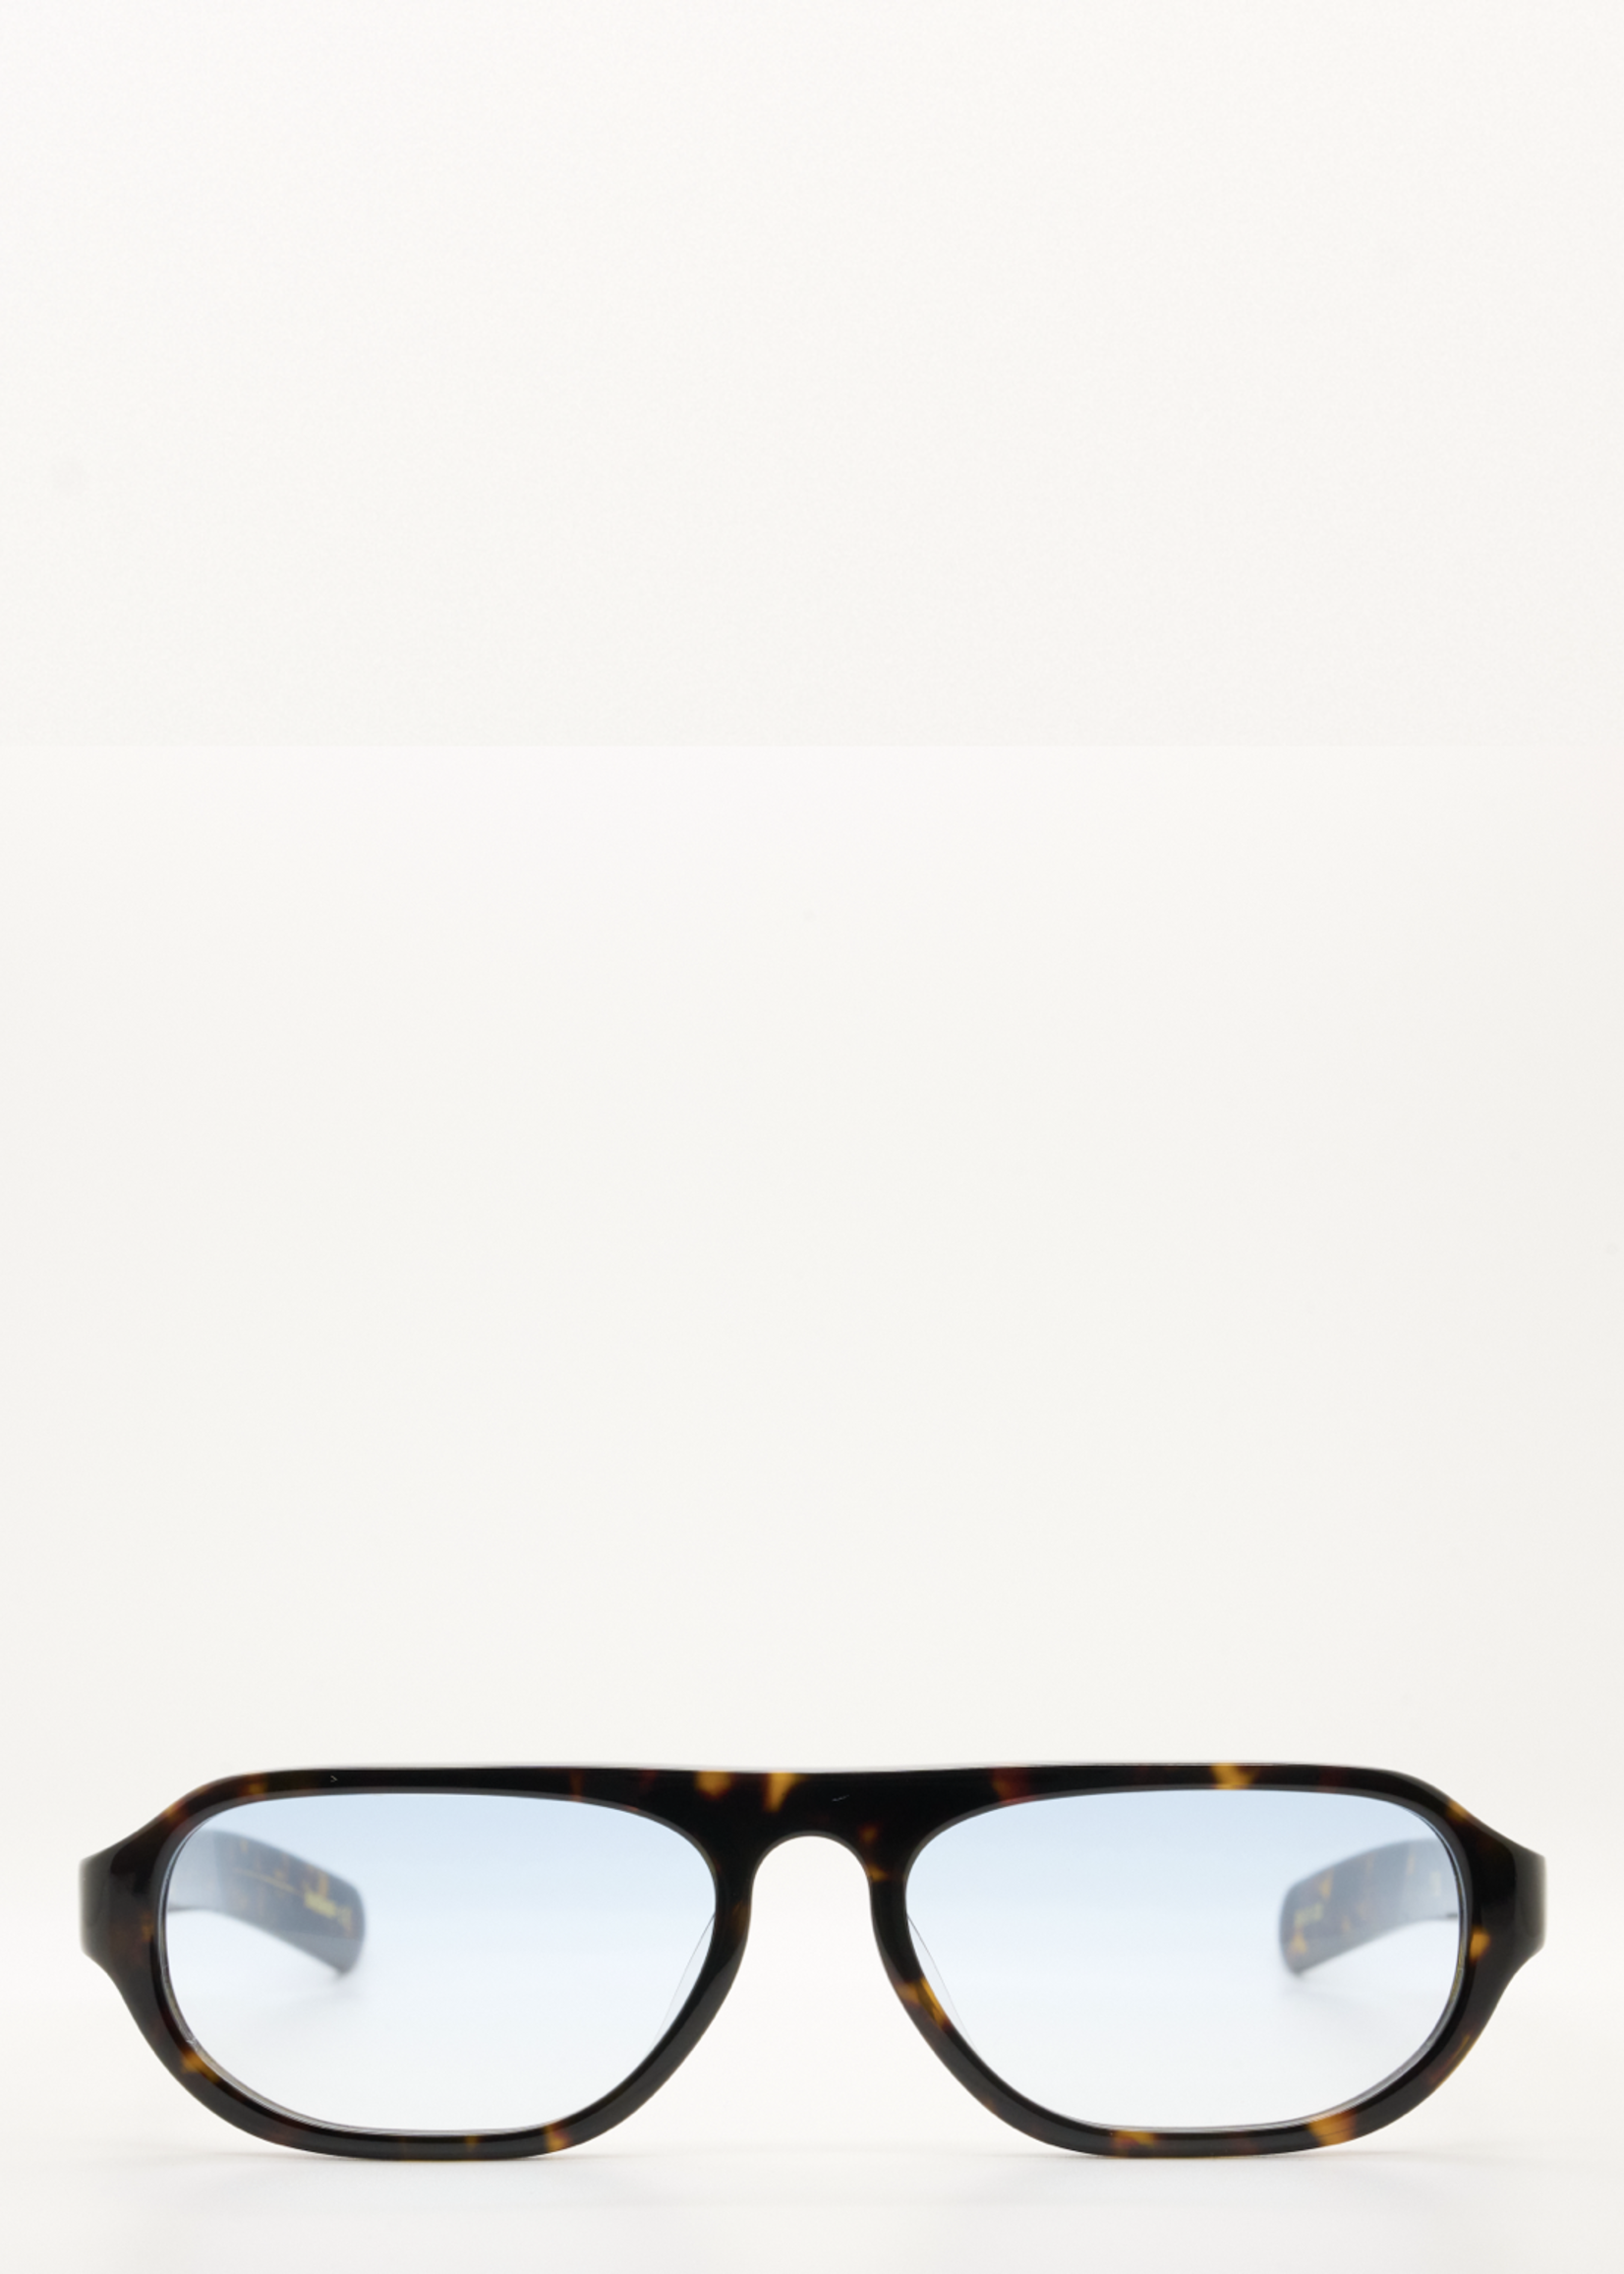 FLATLIST PENN Sunglasses in Dark Tortoise with Blue Gradient Lens